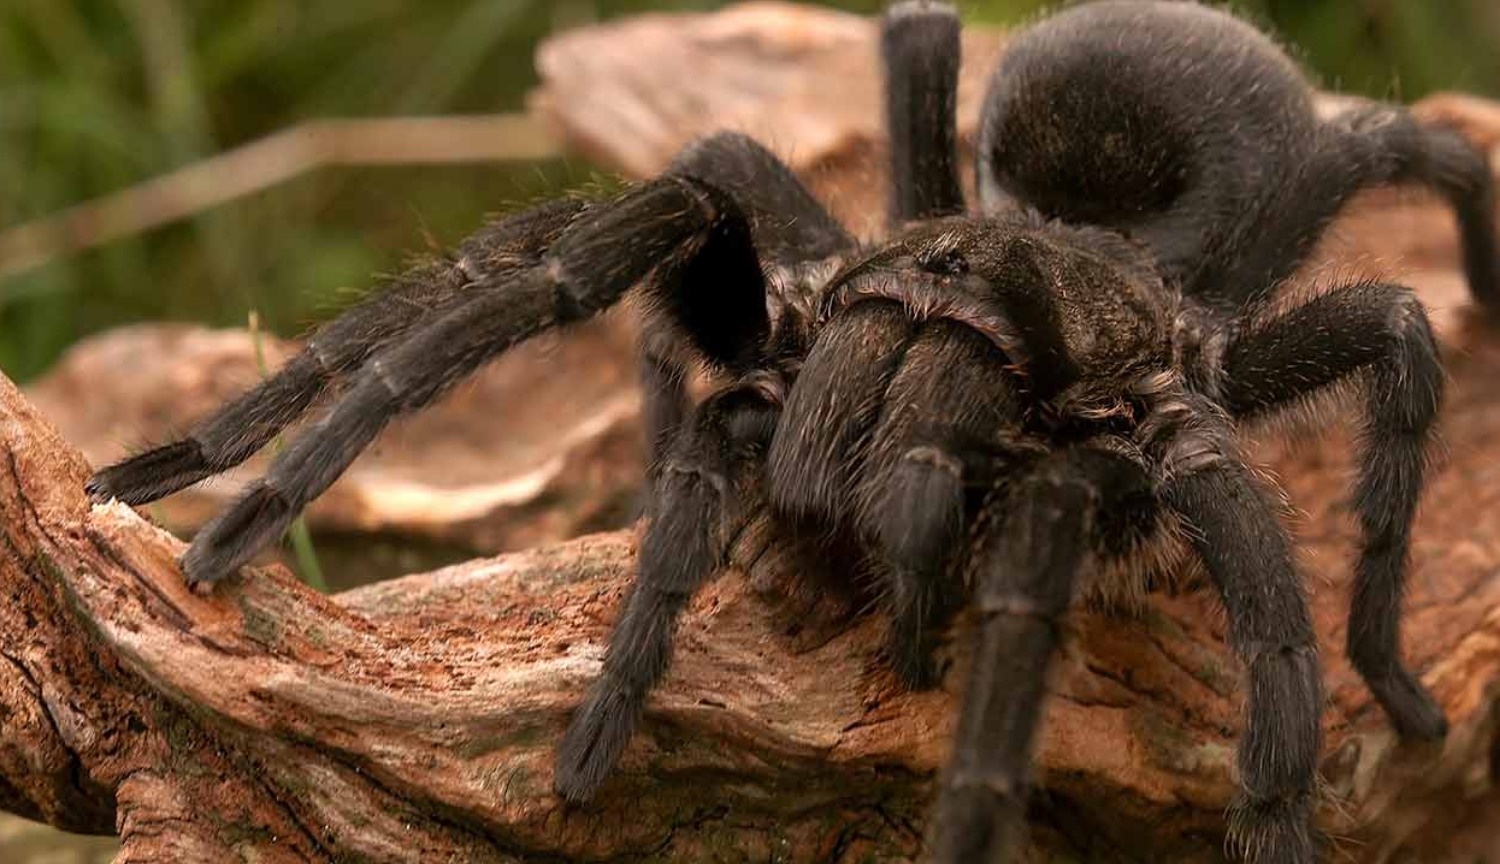 #Video | den Gigantiske edderkopper, der var årsag til død for mange dyr